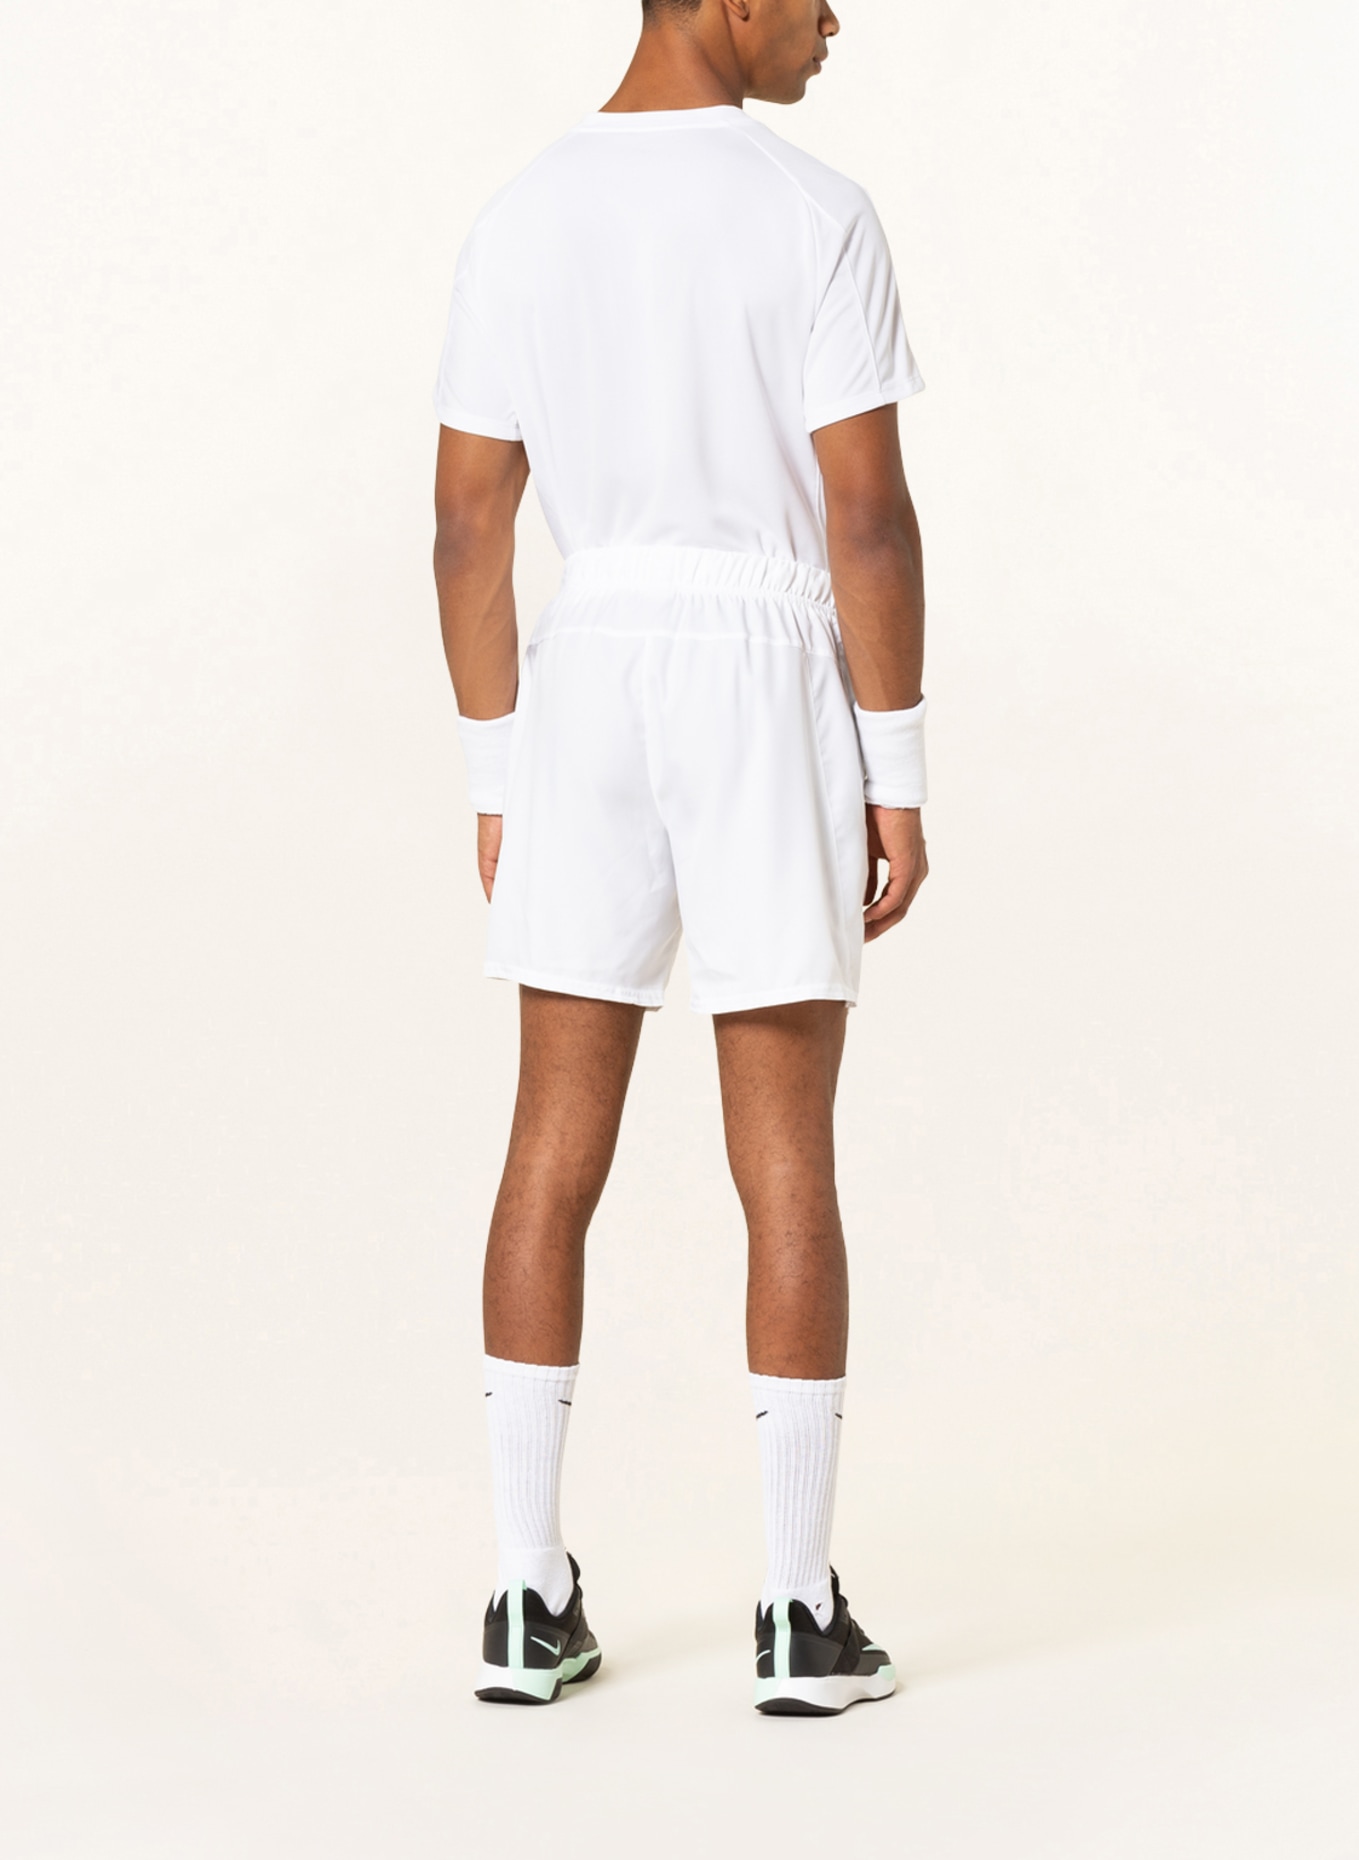 Nike Tennisshorts NIKECOURT DRI-FIT VICTORY, Farbe: WEISS (Bild 3)